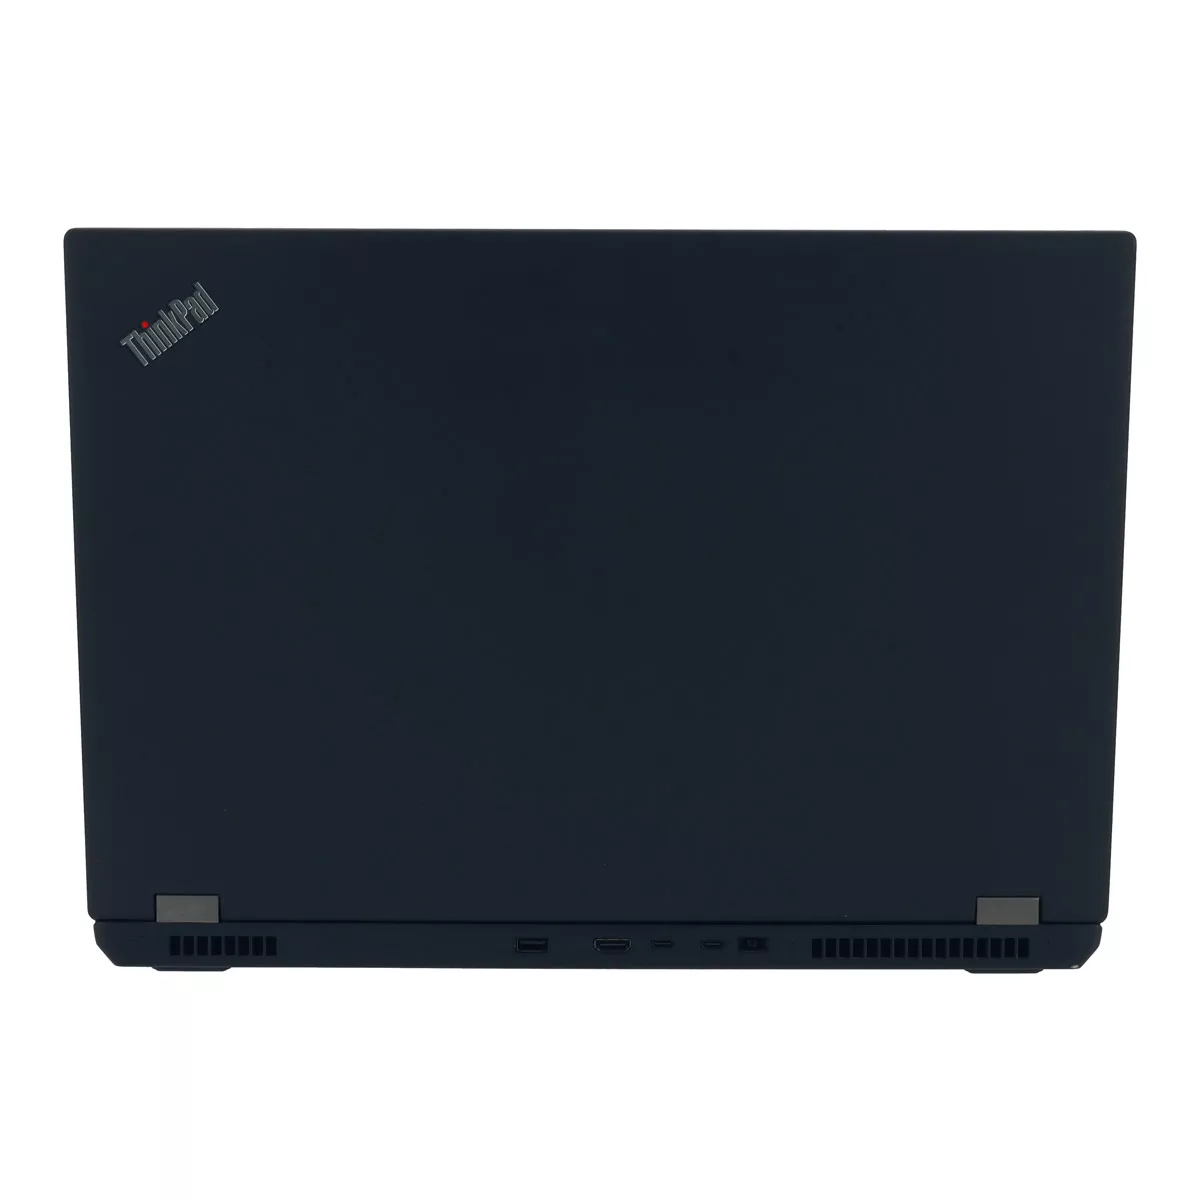 Lenovo ThinkPad P73 Core i7 9850H nVidia Quadro RTX 3000M 500 GB M.2 nVME SSD Webcam B